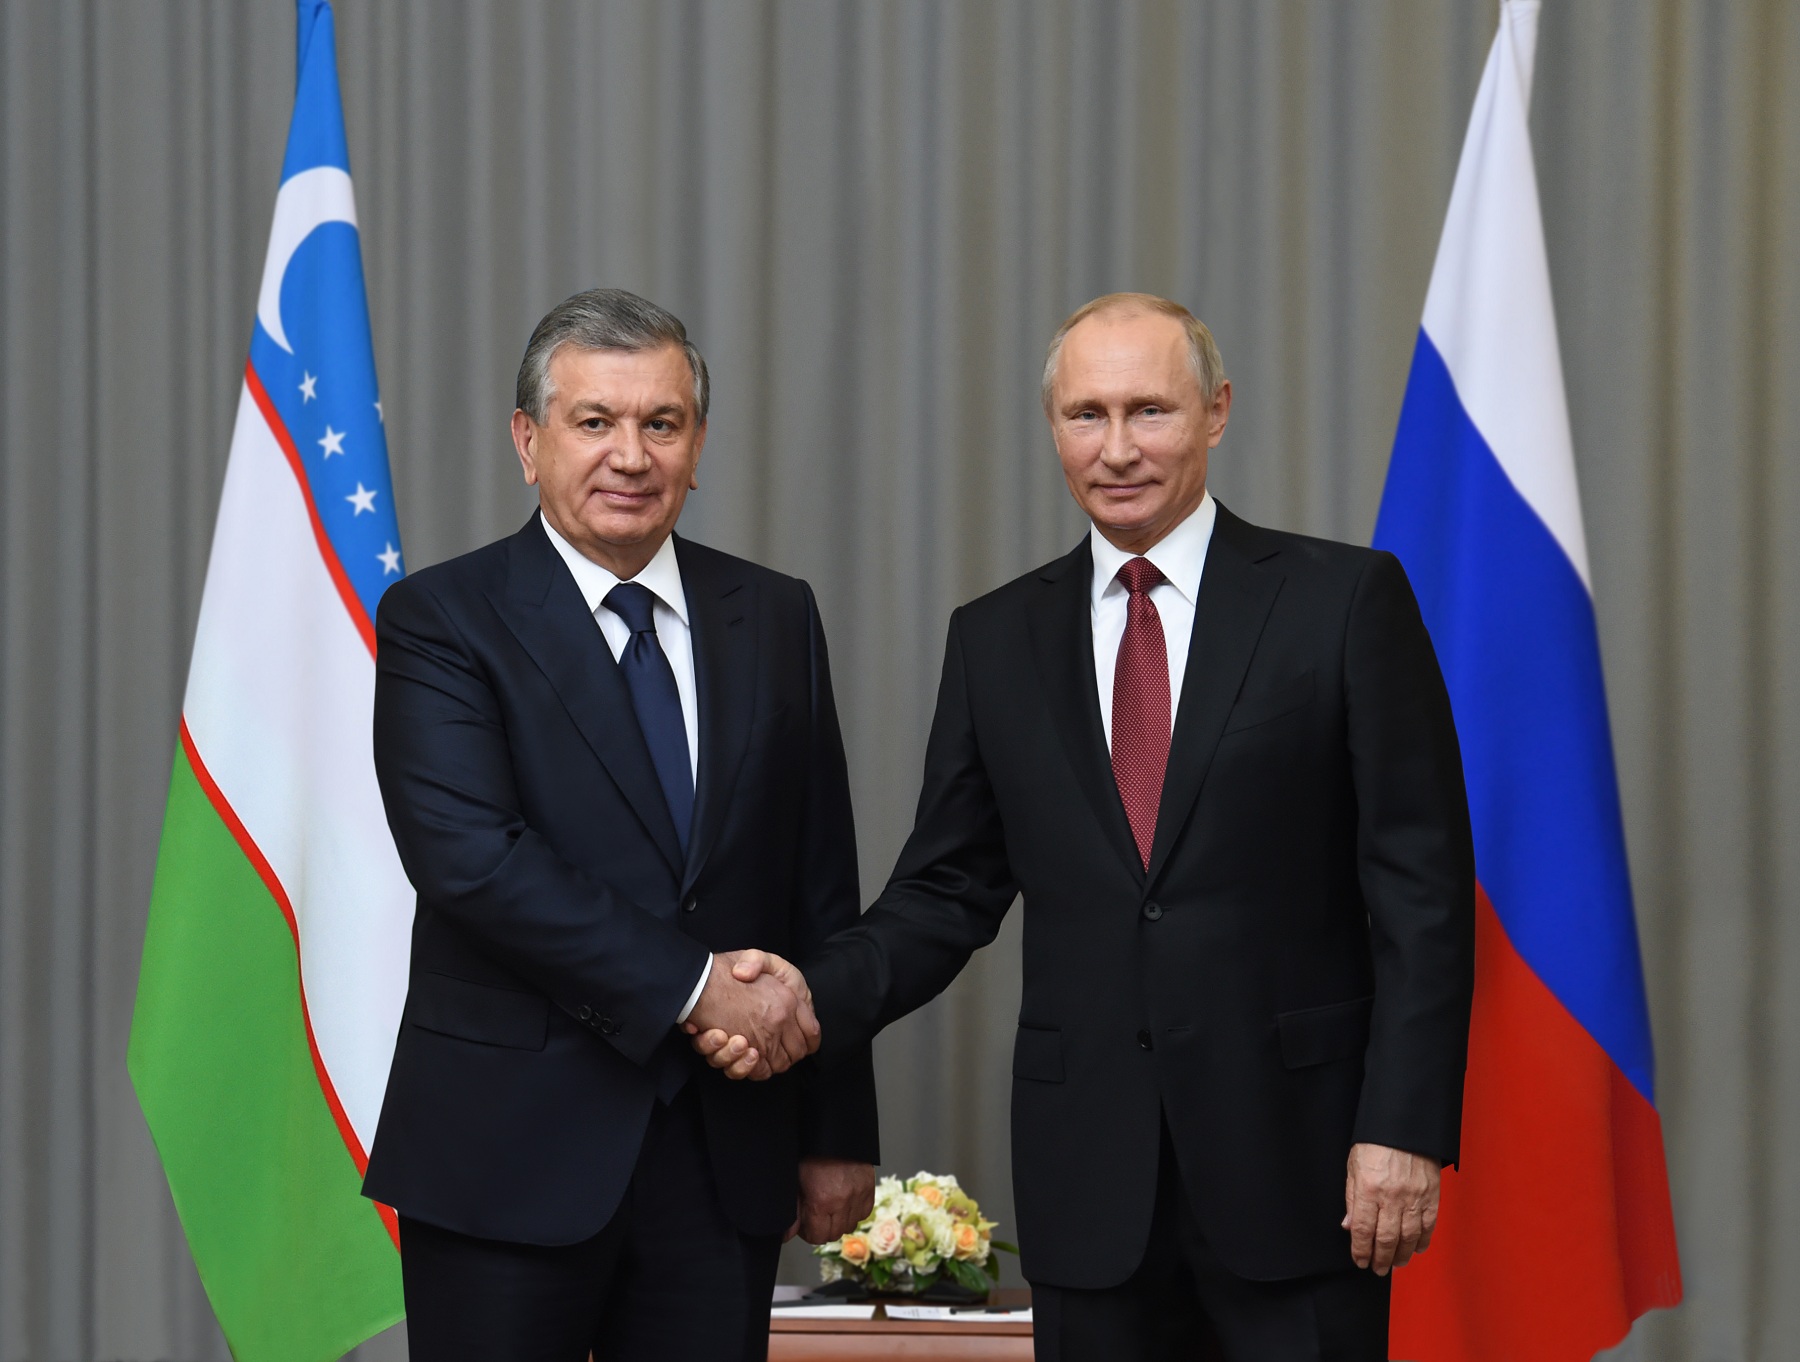 Мирзиёев поздравил Путина с переизбранием президентом России на пятый срок